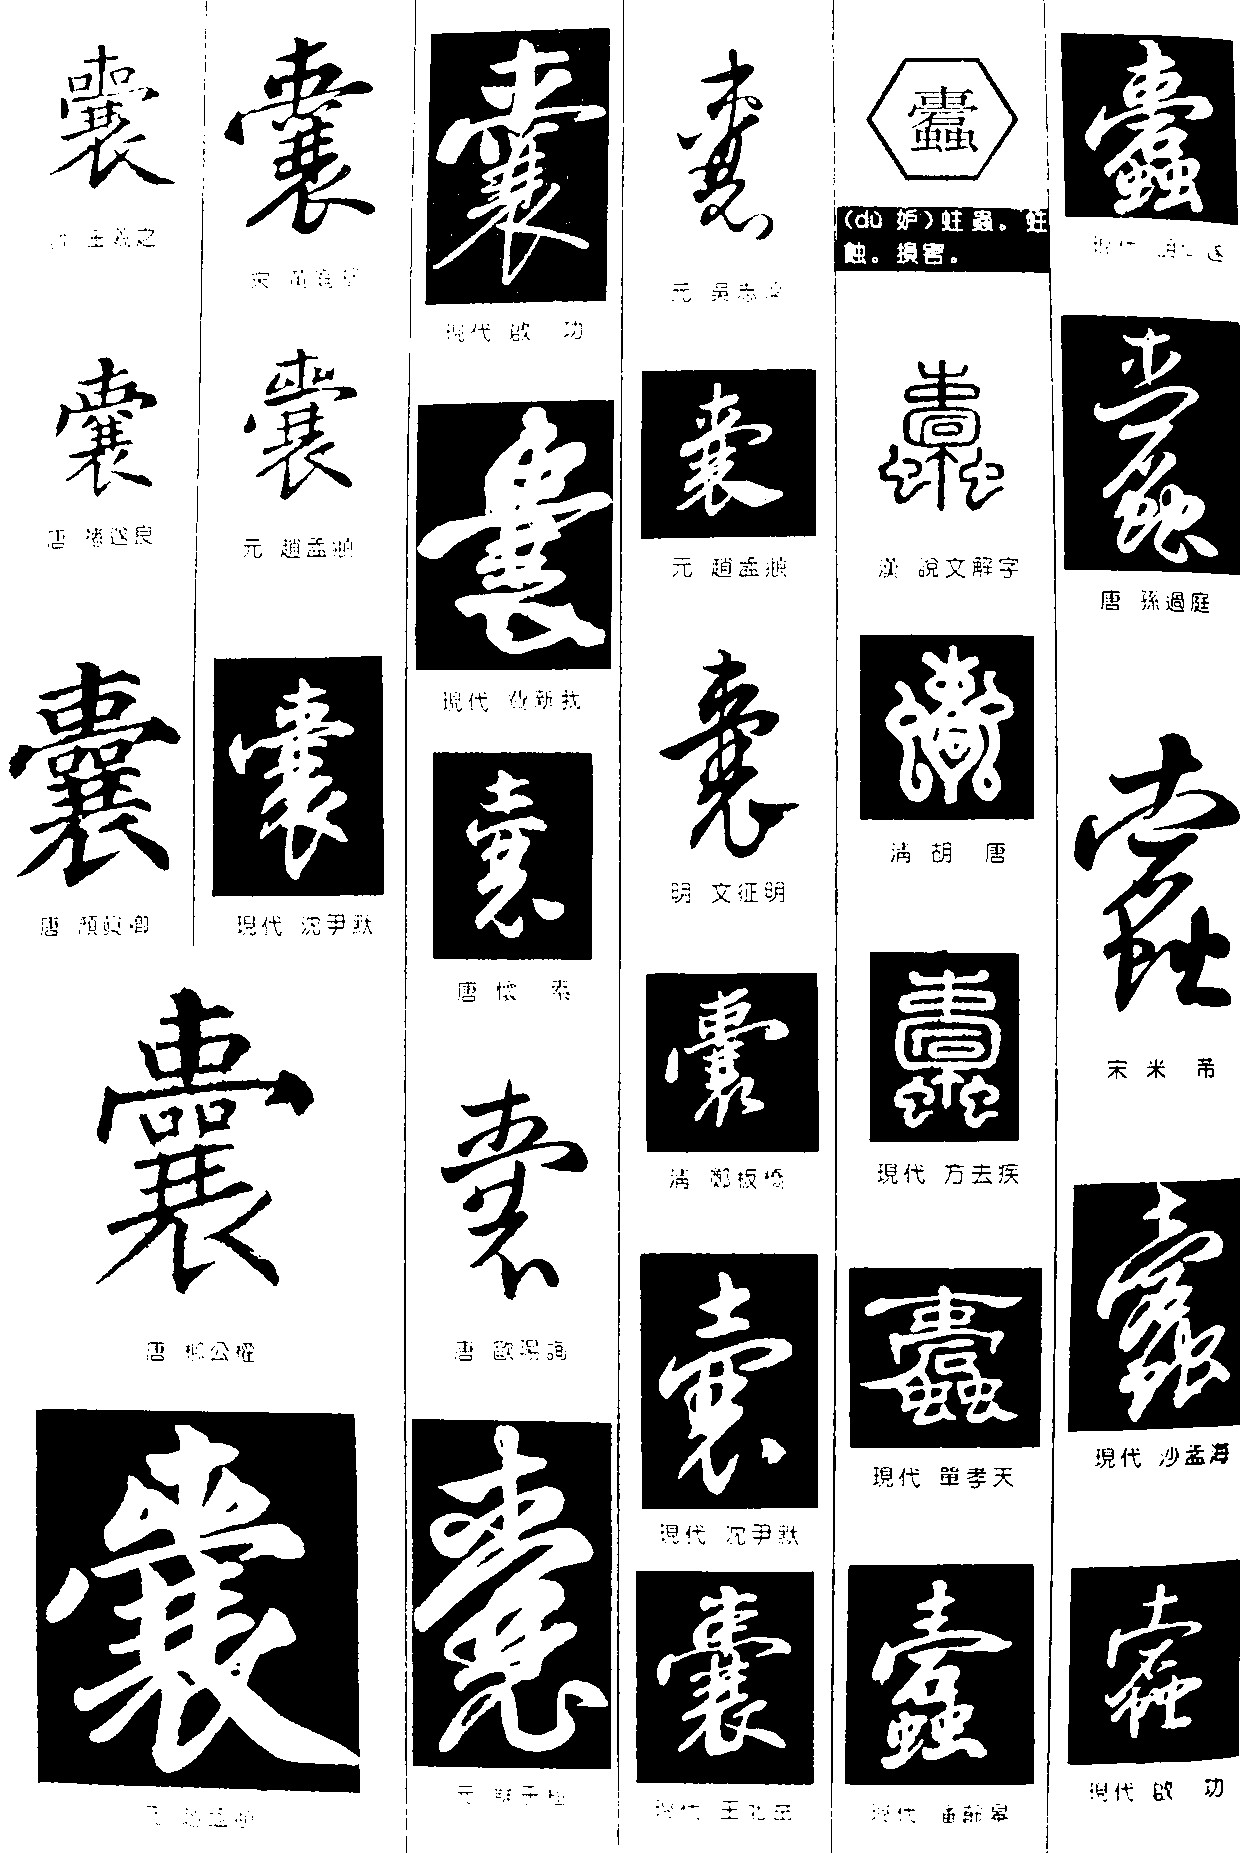 囊蠹_书法字体_字体设计作品-中国字体设计网_ziti.cndesign.com